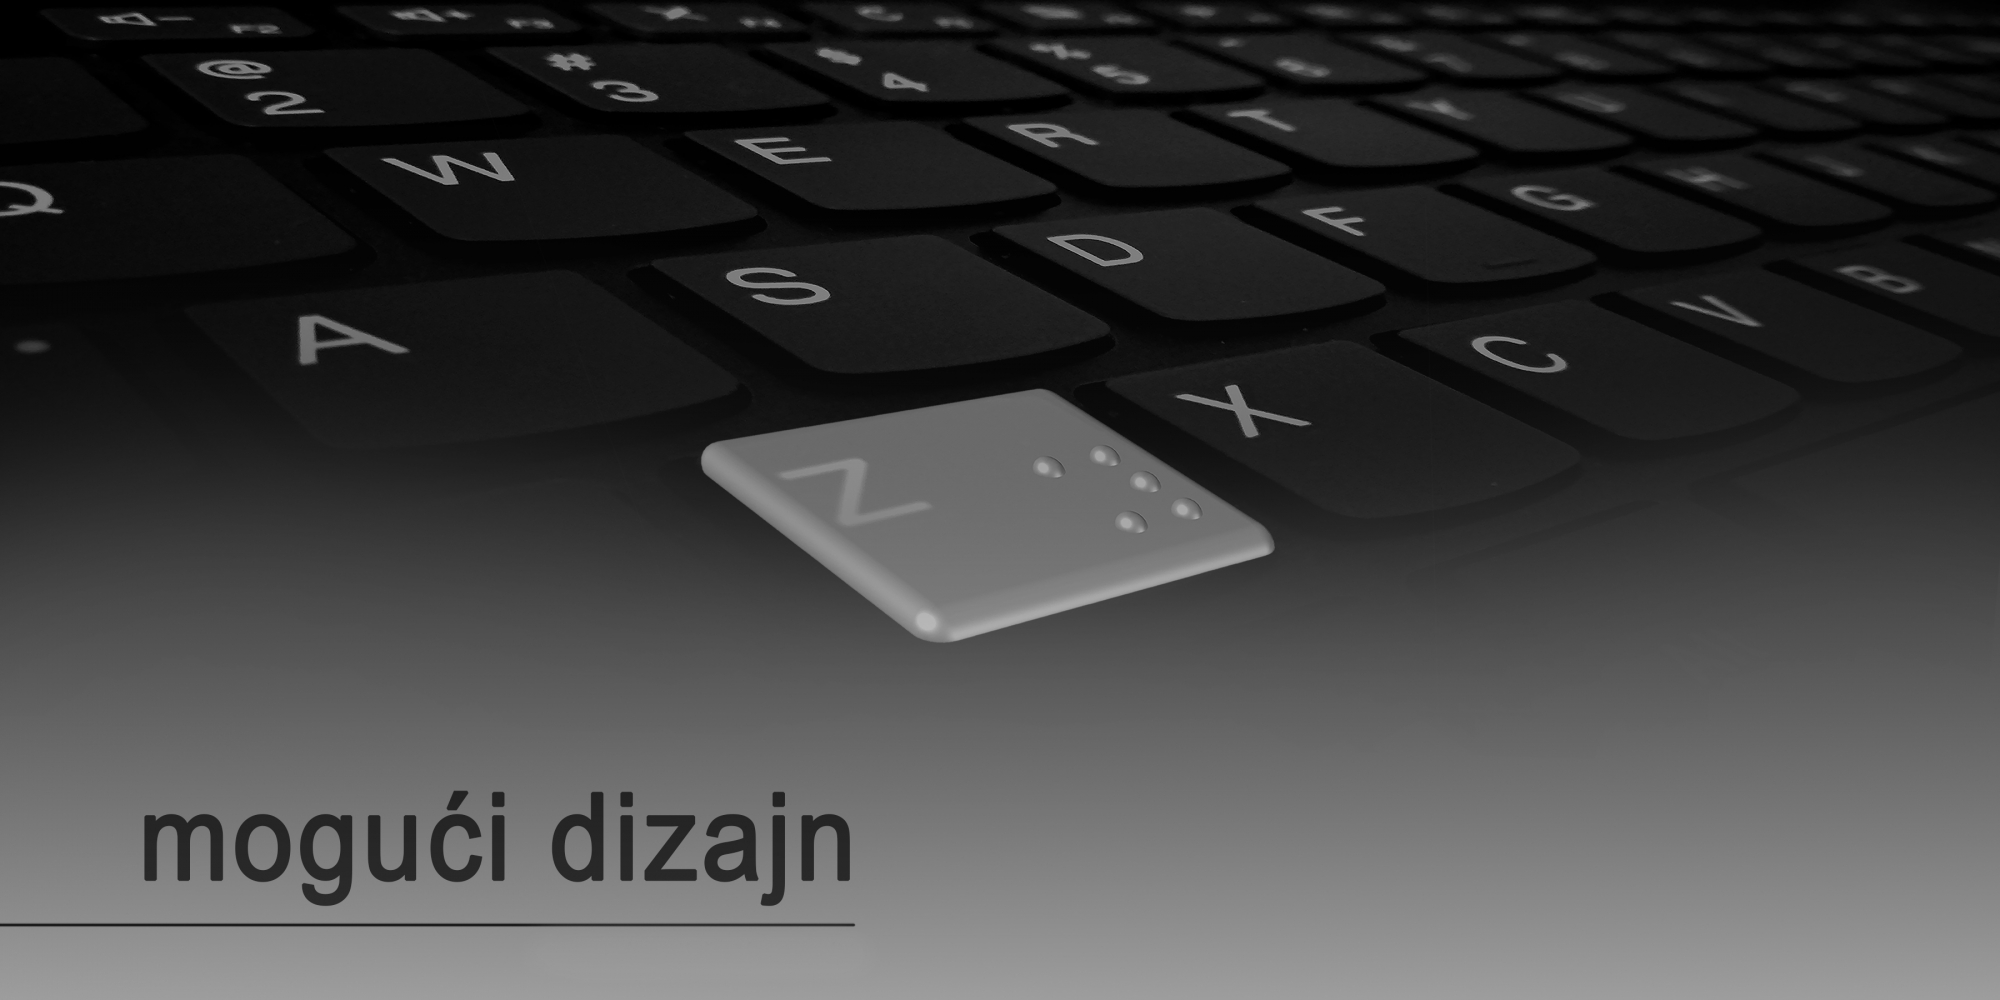 tastatura + brajeva azbuka = mogući dizajn (pločice sa brajevom azbukom za tastaturu)